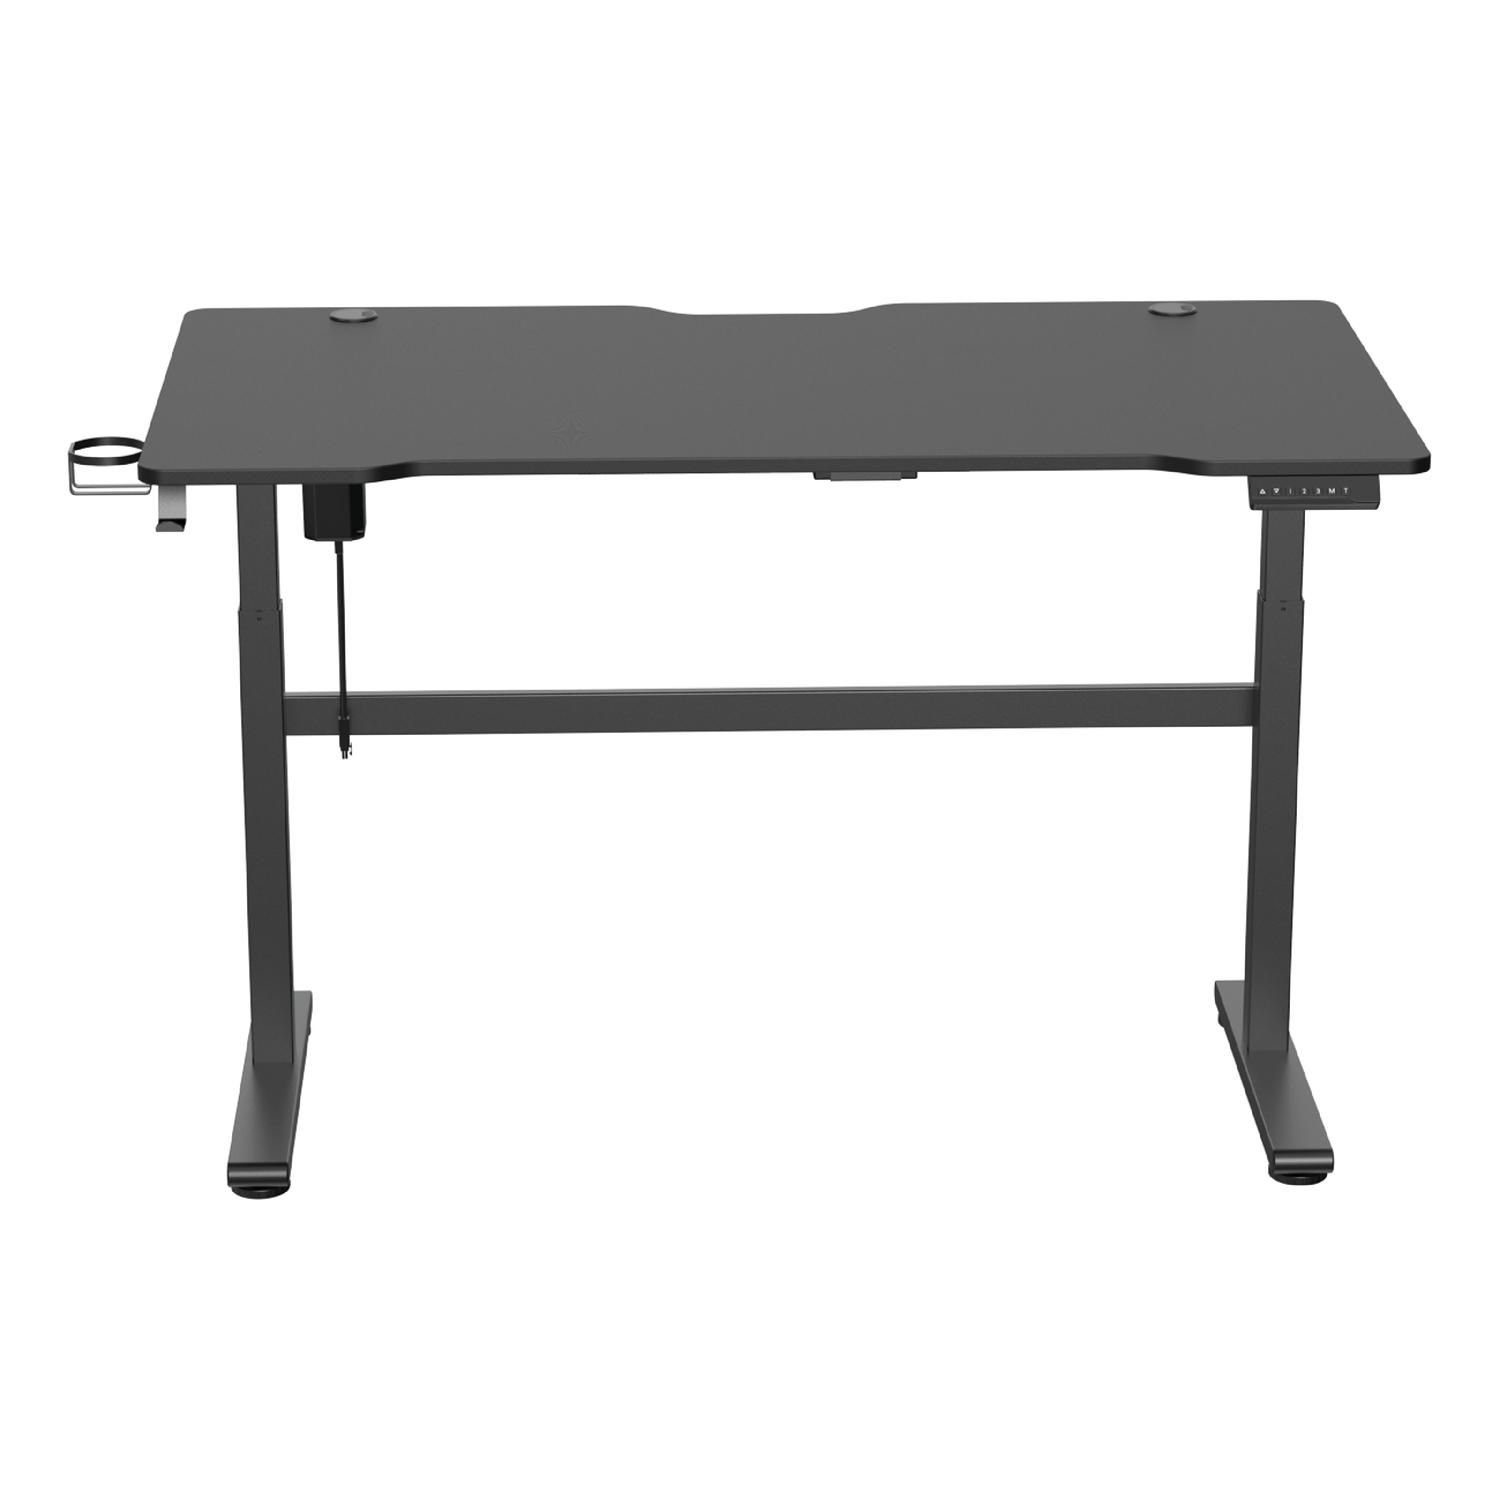 DELTACO Gamingtisch DT410 / WT95 höhenverstellbarer Gaming Tisch, Becher- und Headsethalterung, Kabelmanagement, stufenlose Einstellung schwarz | schwarz | schwarz